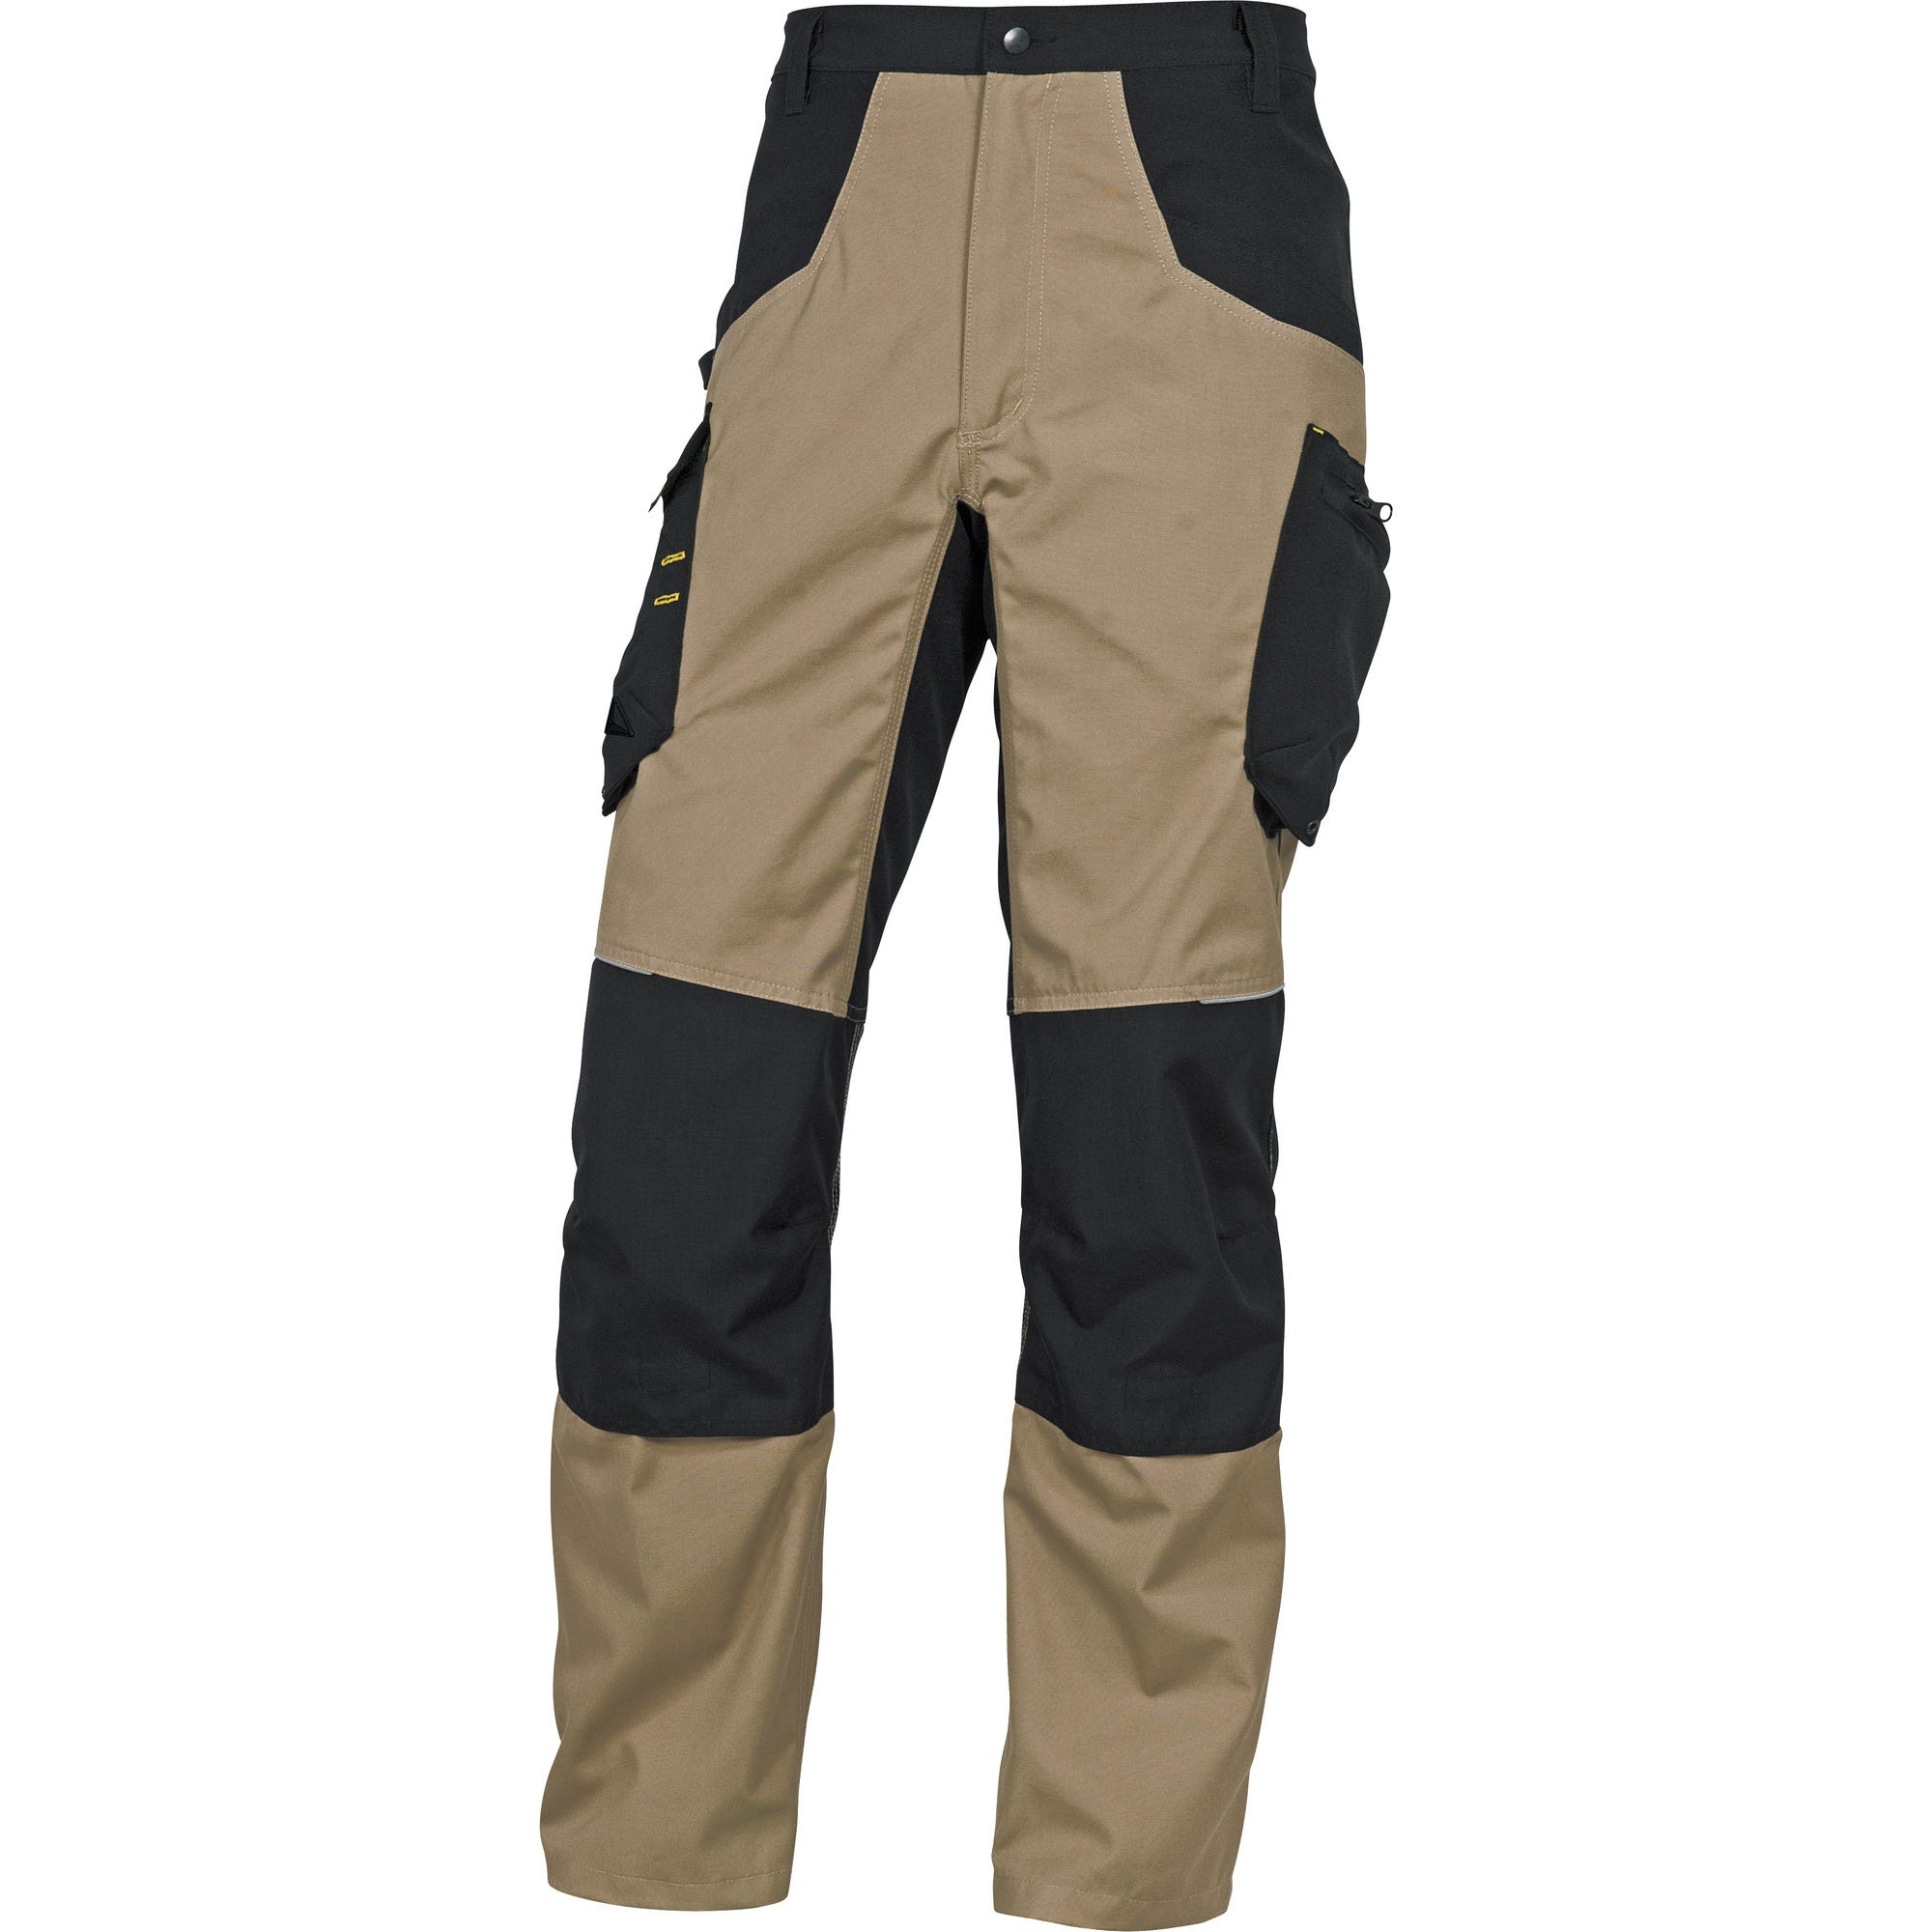 Pantalon de travail beuge / noir T.M Mach5 - DELTA PLUS 0